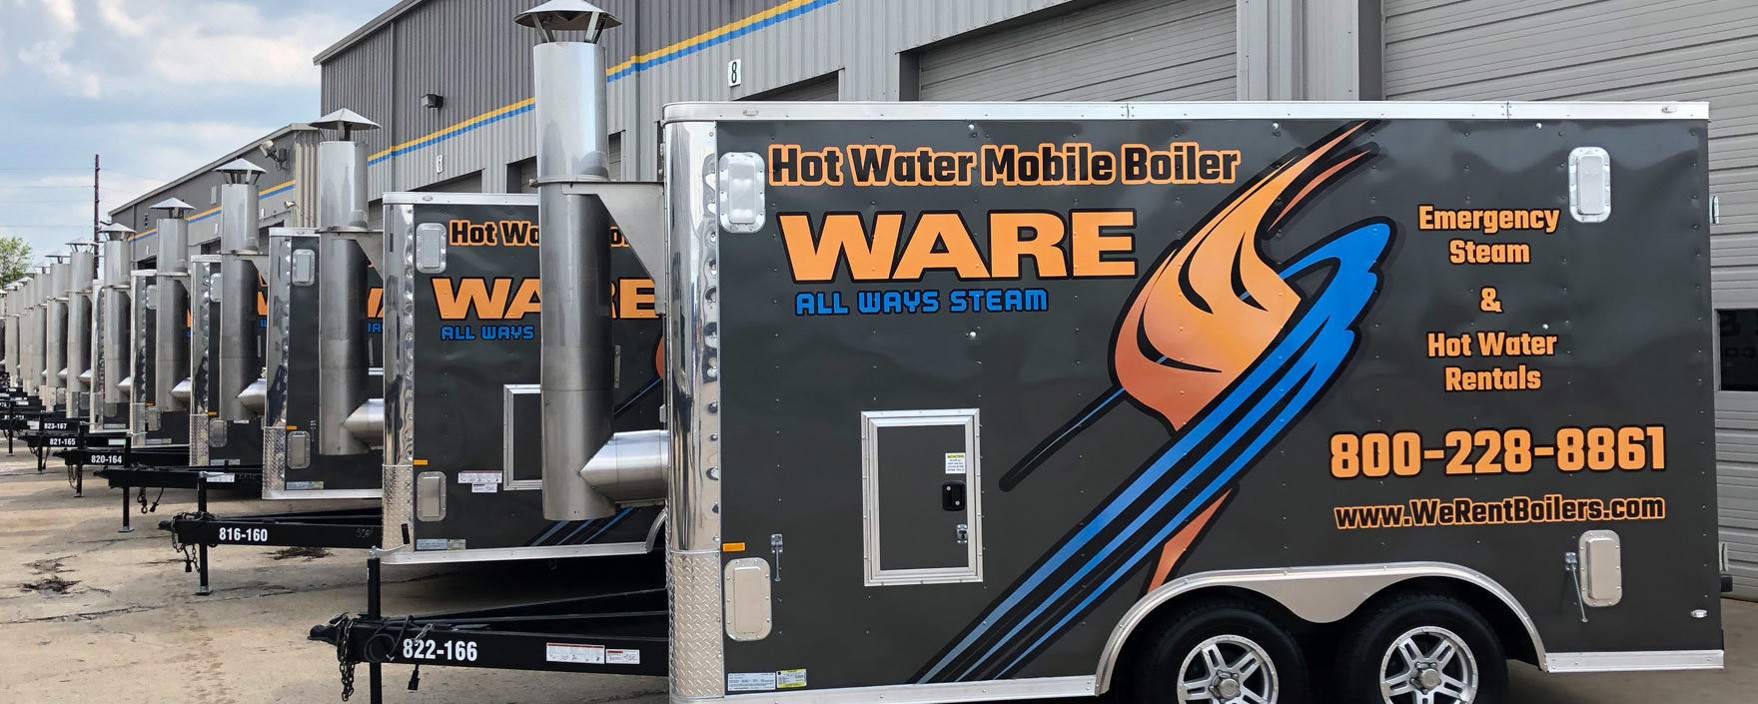 Mobile Hot Water Boiler Rentals